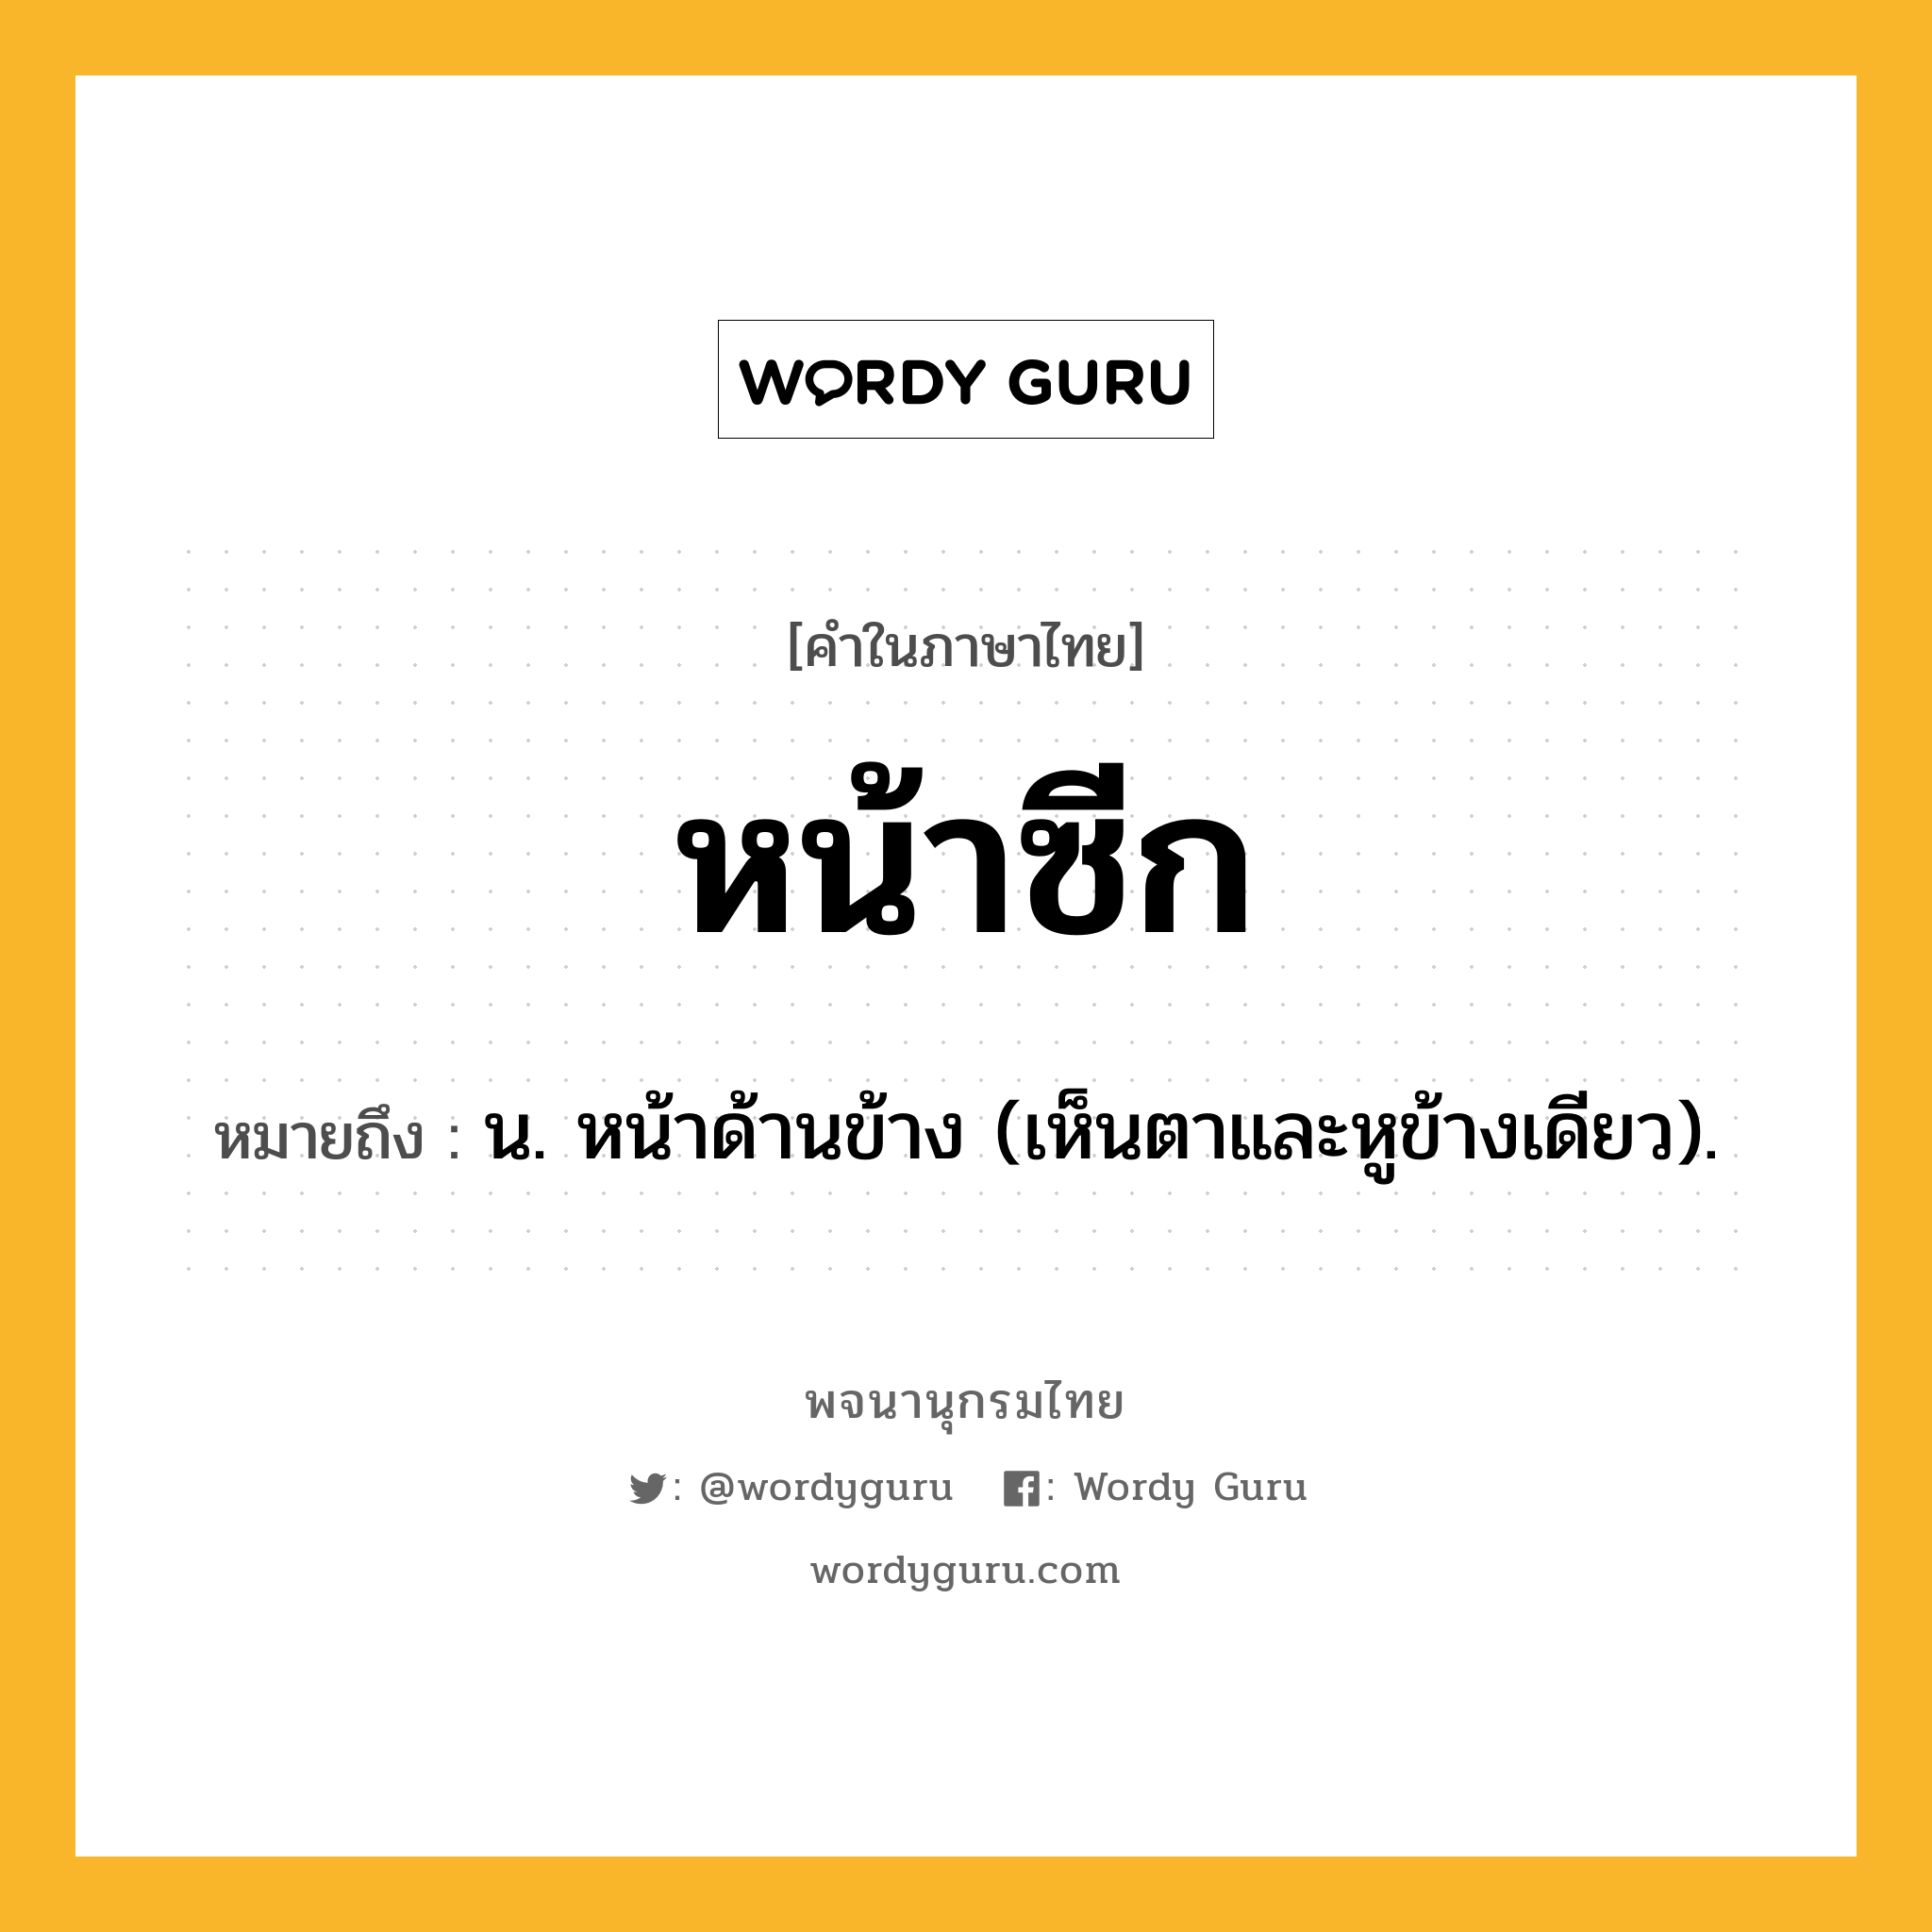 หน้าซีก ความหมาย หมายถึงอะไร?, คำในภาษาไทย หน้าซีก หมายถึง น. หน้าด้านข้าง (เห็นตาและหูข้างเดียว).